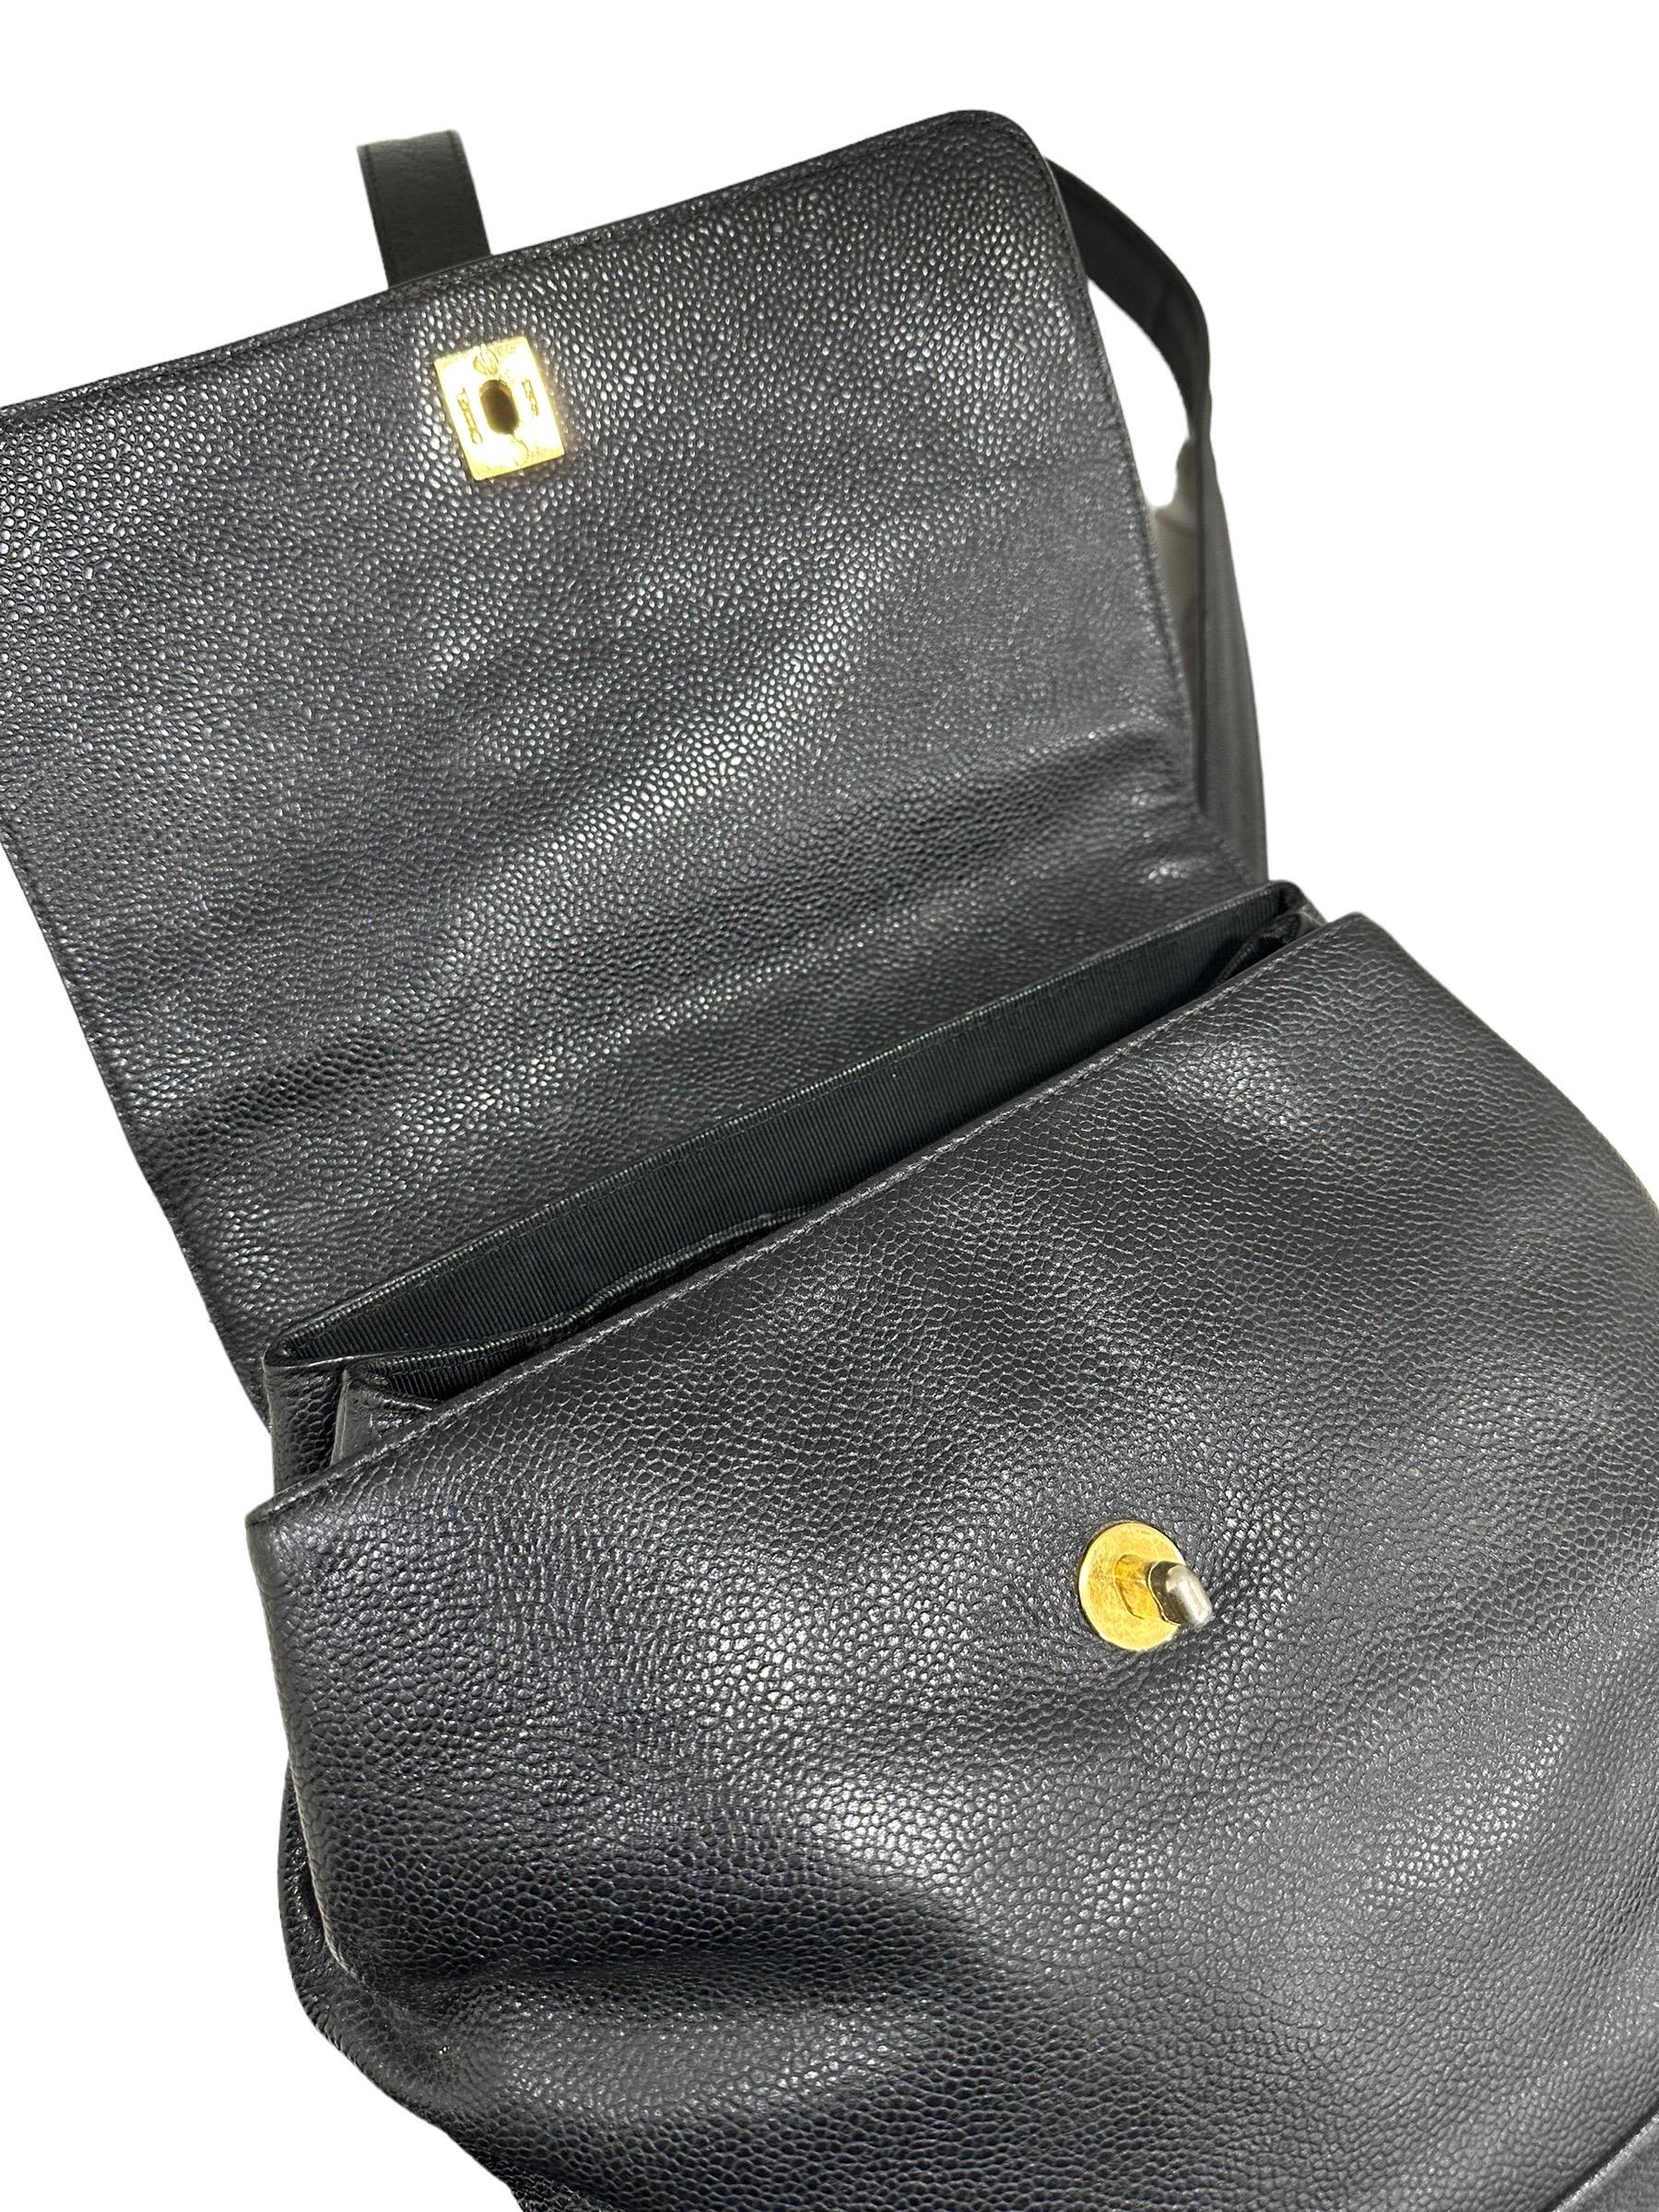 1997 Chanel Black Leather Vintage Backpack  11